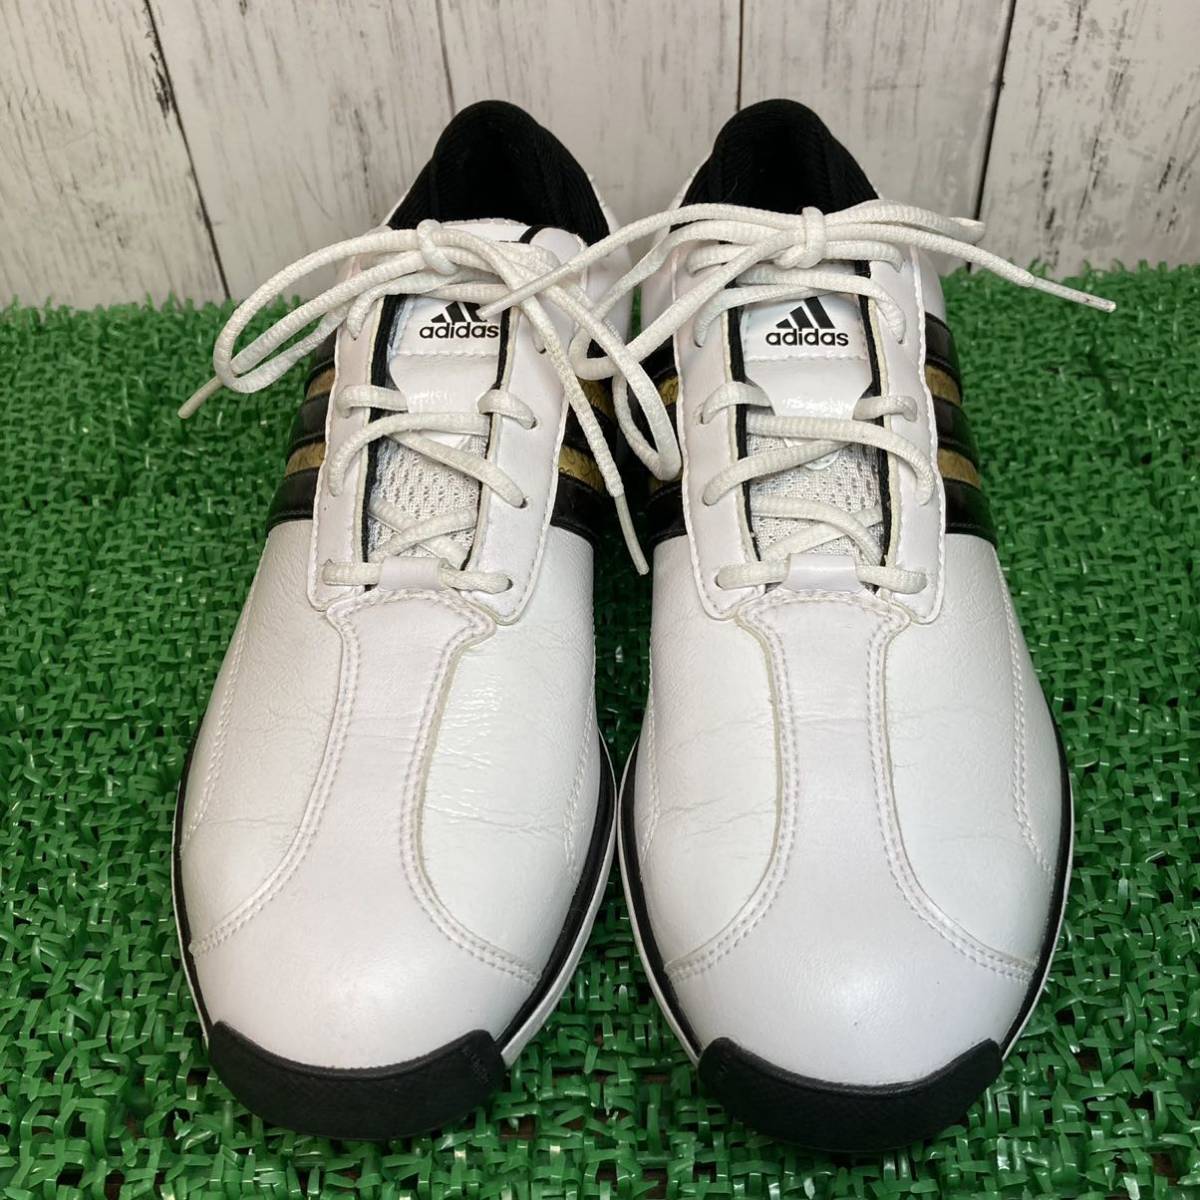 【adidas】アディダス ゴルフシューズ 22.5cm BALANCE NITRO 2.0 バランスニトロ スパイクレス ホワイト